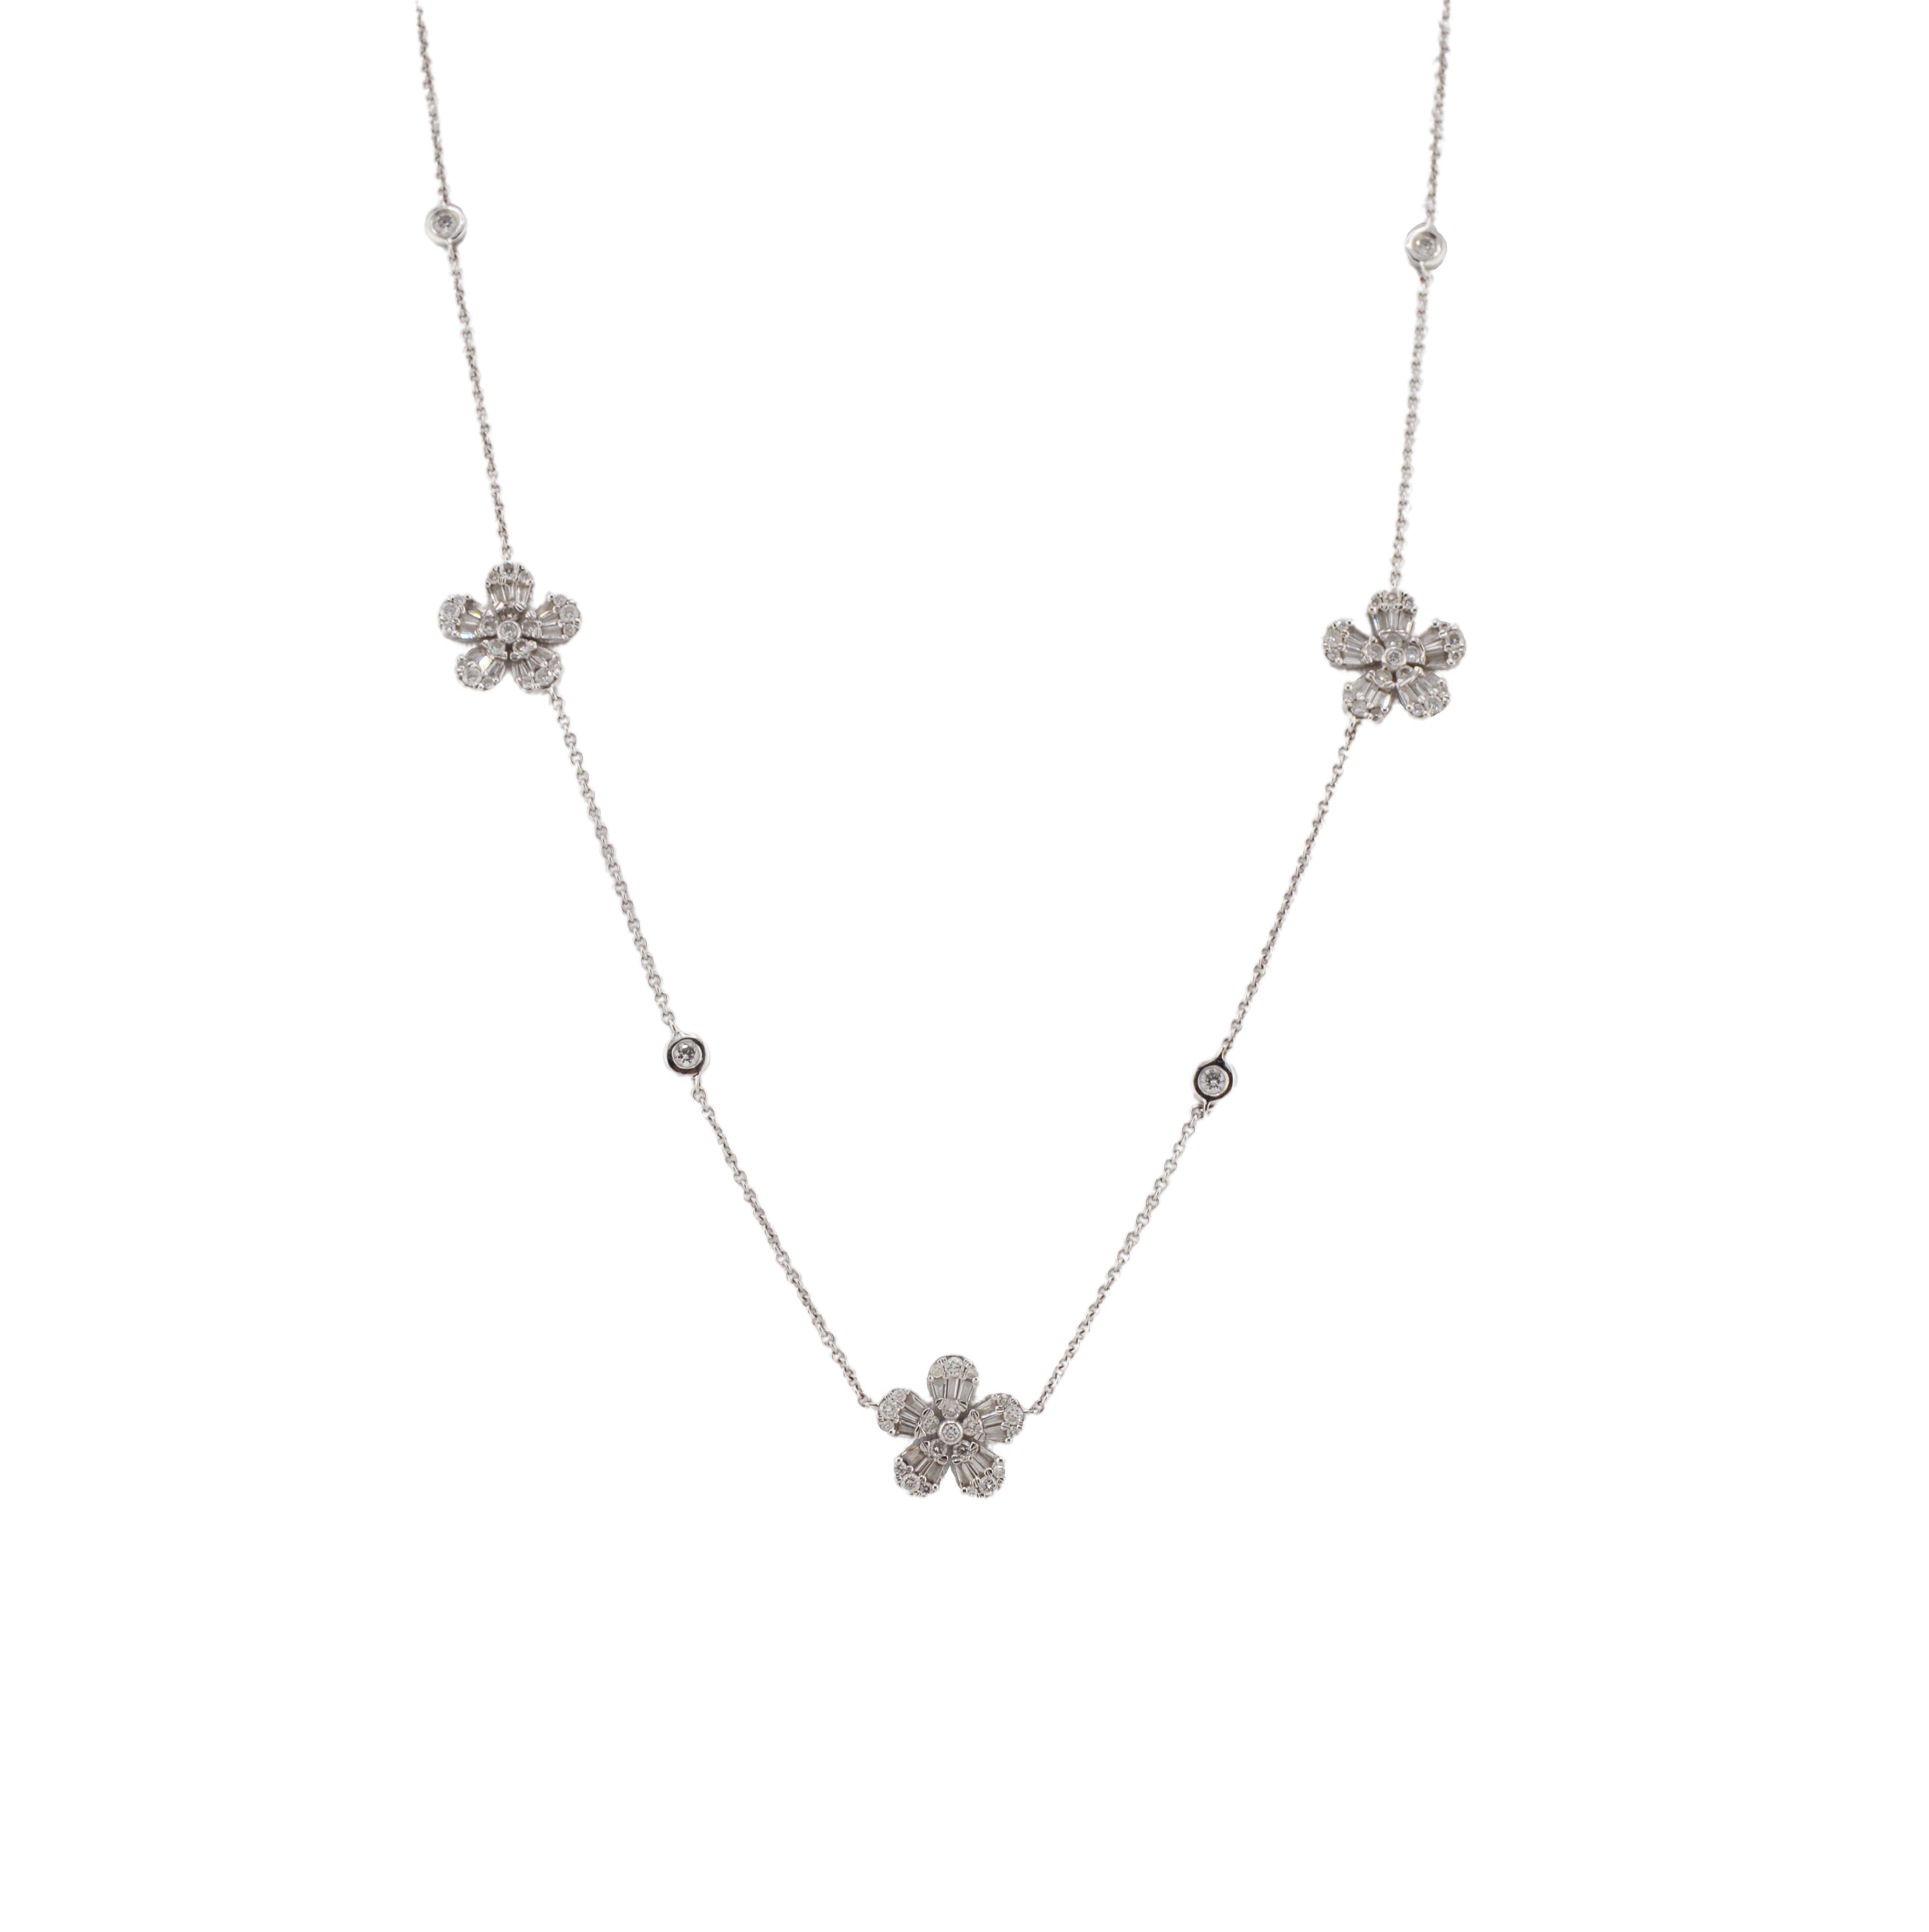 White Daisy with Black Diamond Necklace – JacQueline Sanchez